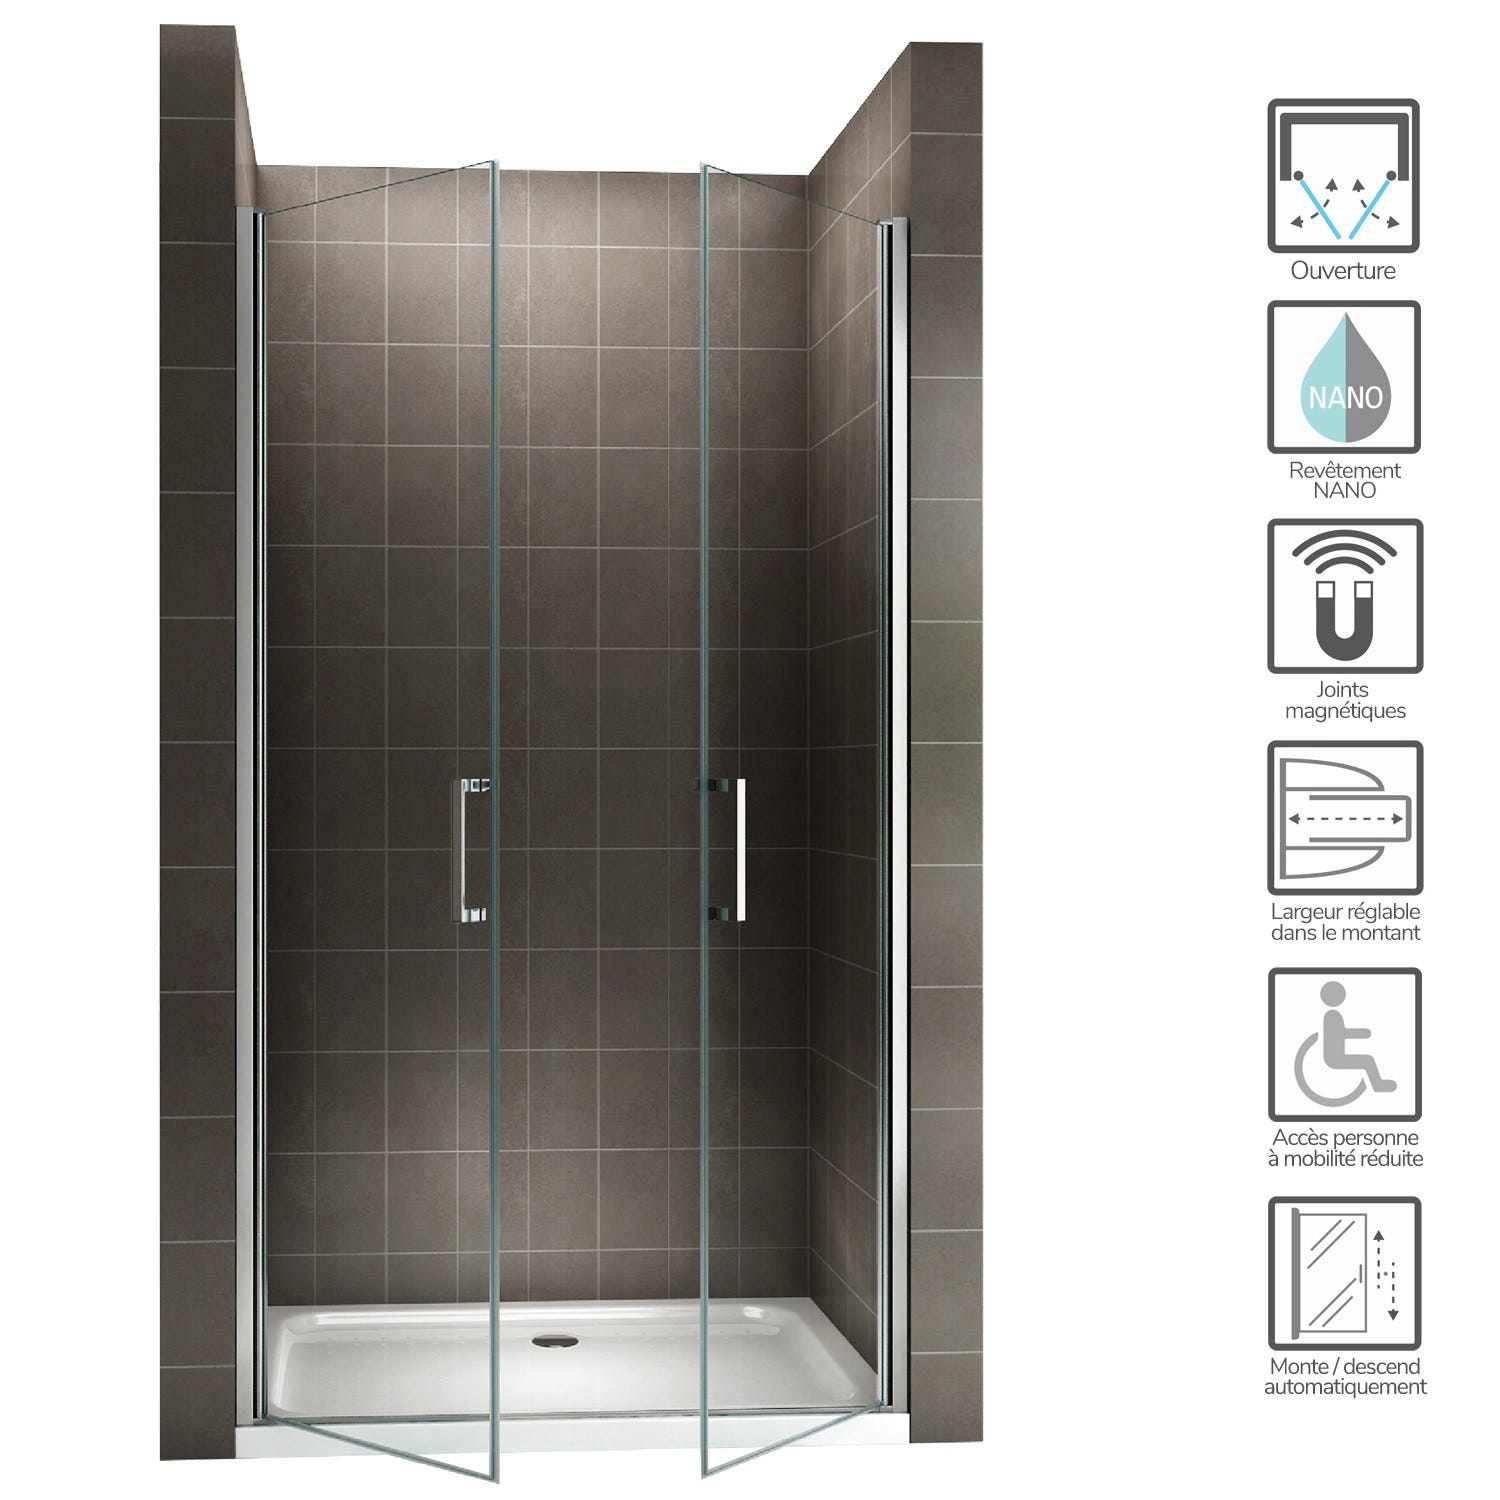 KAYA Porte de douche H 180 largeur réglable 74 à 77 cm verre transparent 1